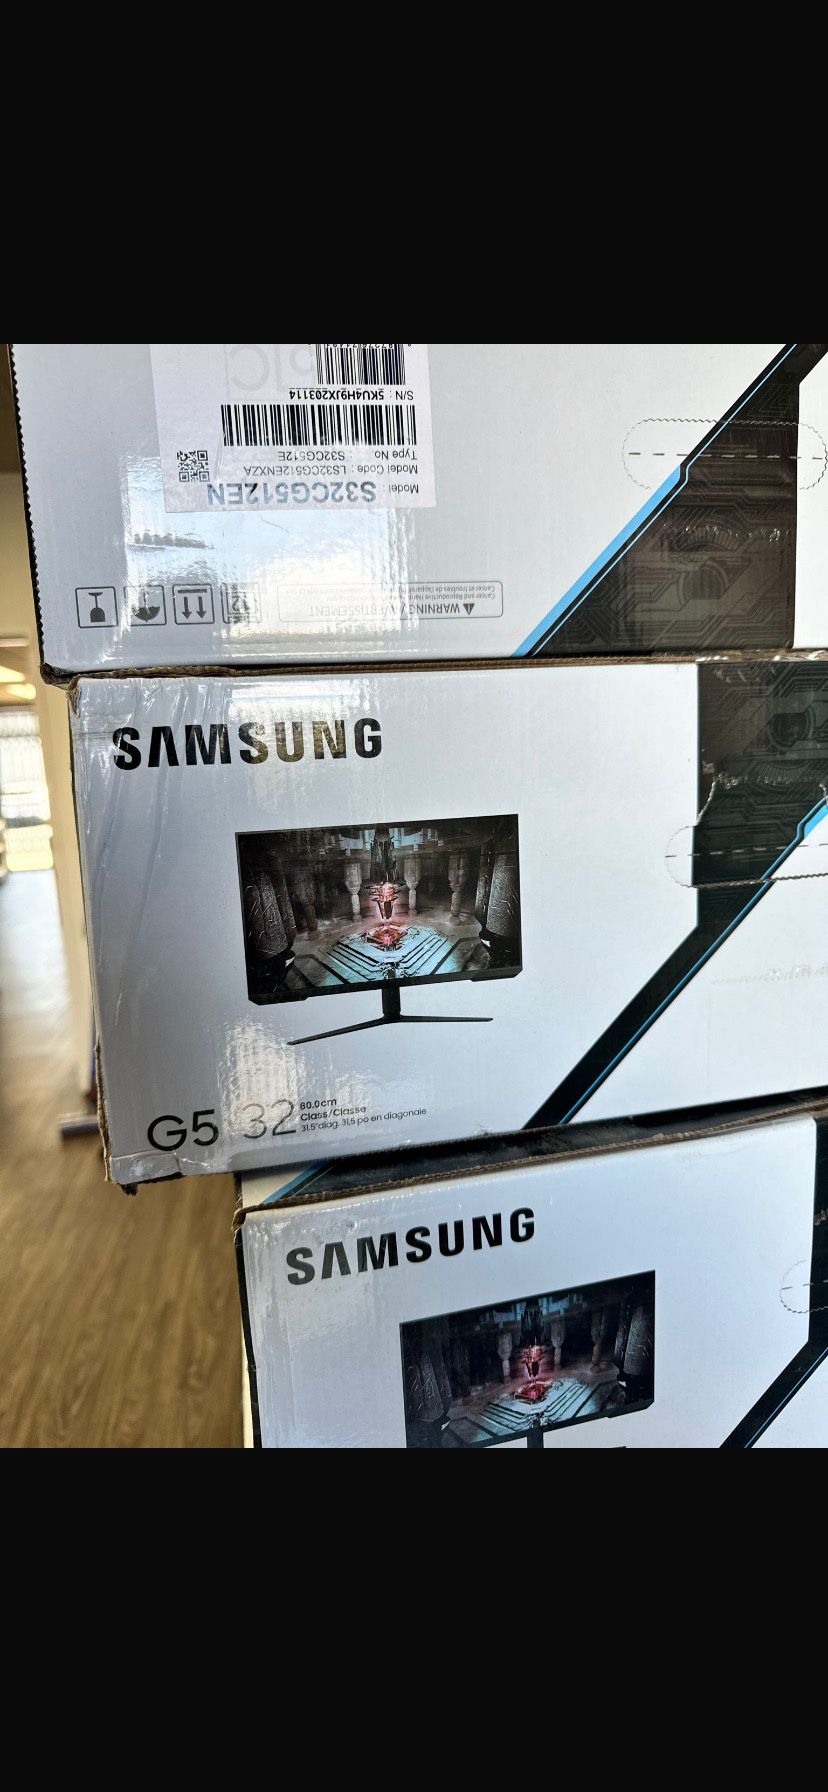 Samsung G5 